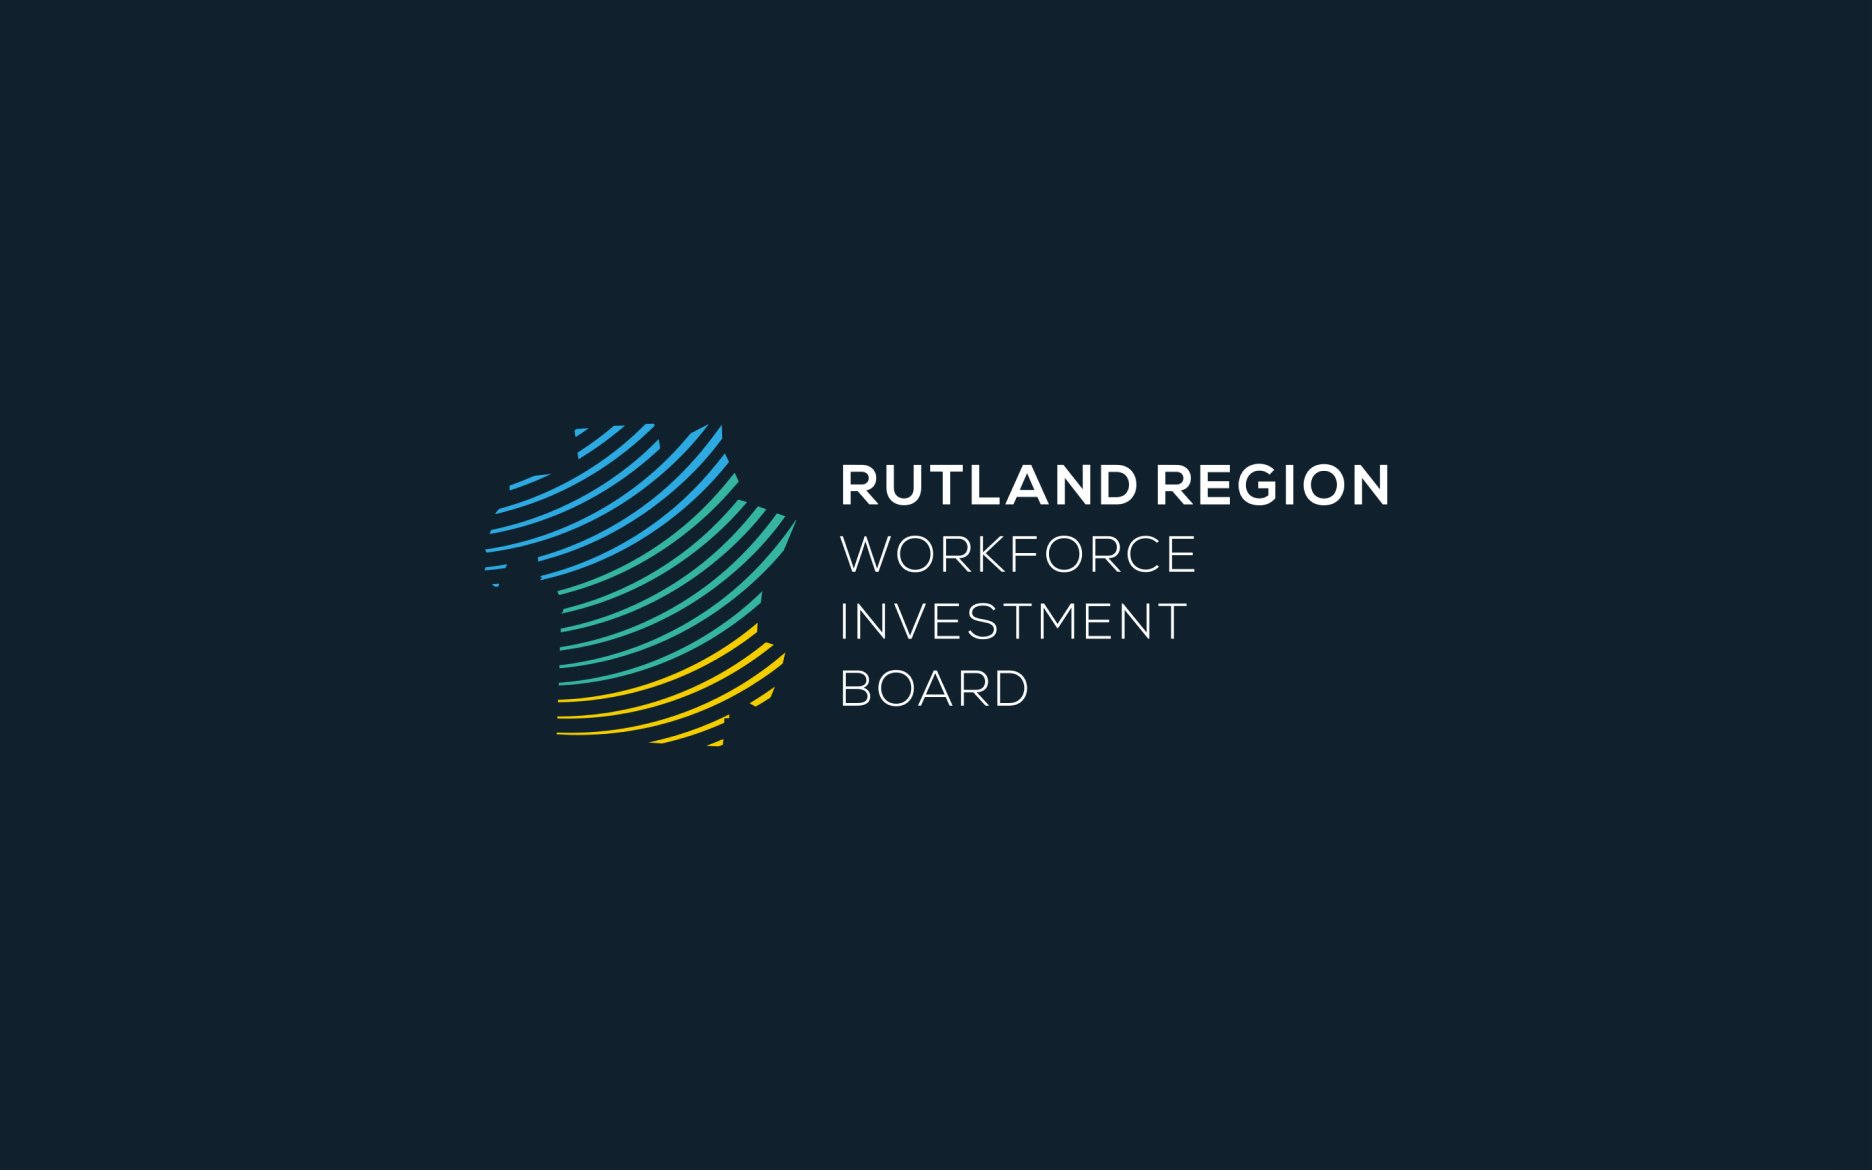 Rutland Region Workforce Investment Board